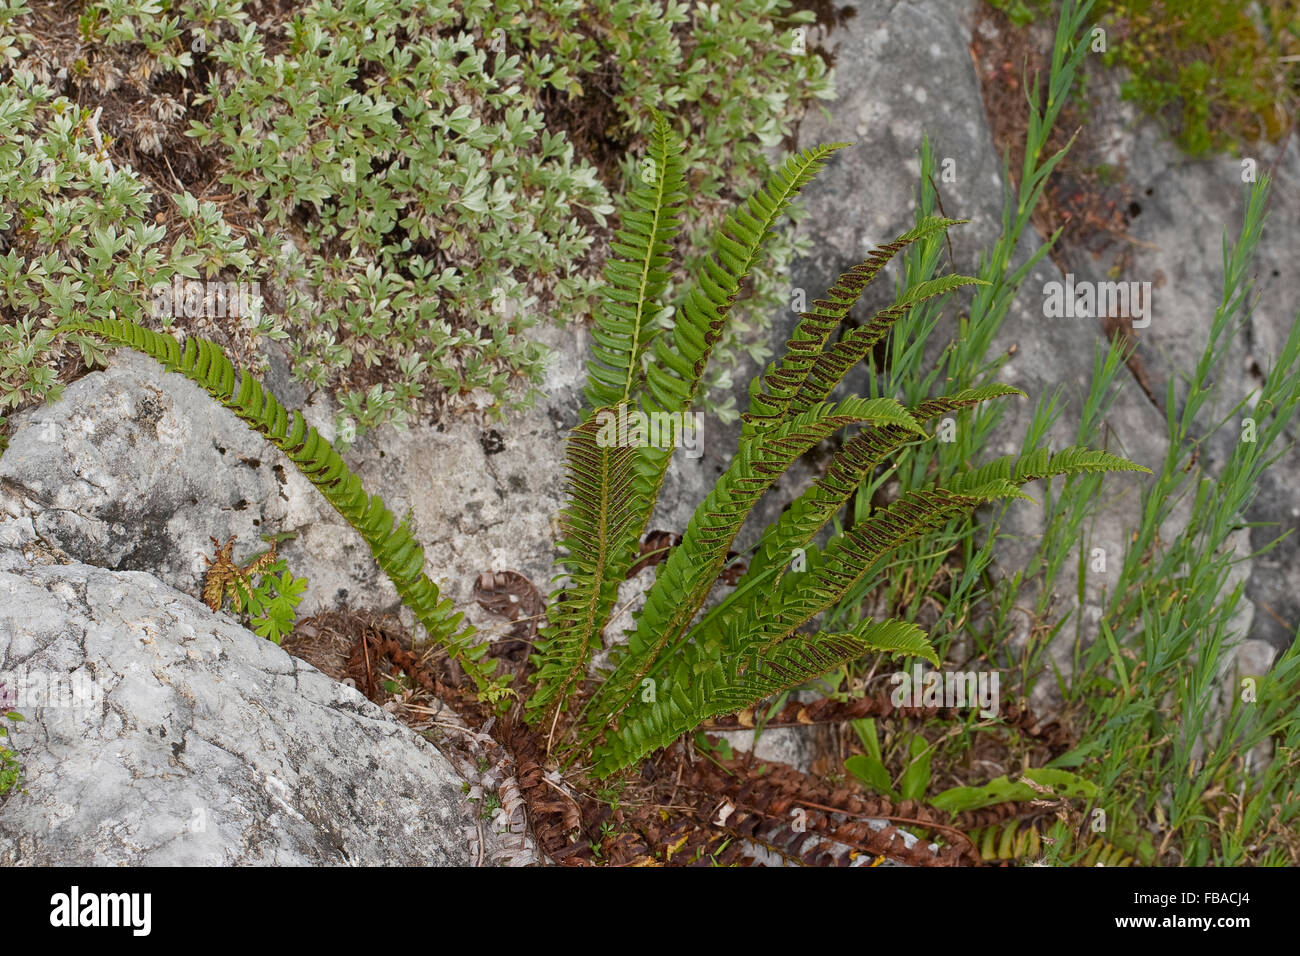 Northern holly fern, Lanzen-Schildfarn, Lanzenschildfarn, Schildfarn, Polystichum lonchitis, Polystichetum lonchitis Stock Photo